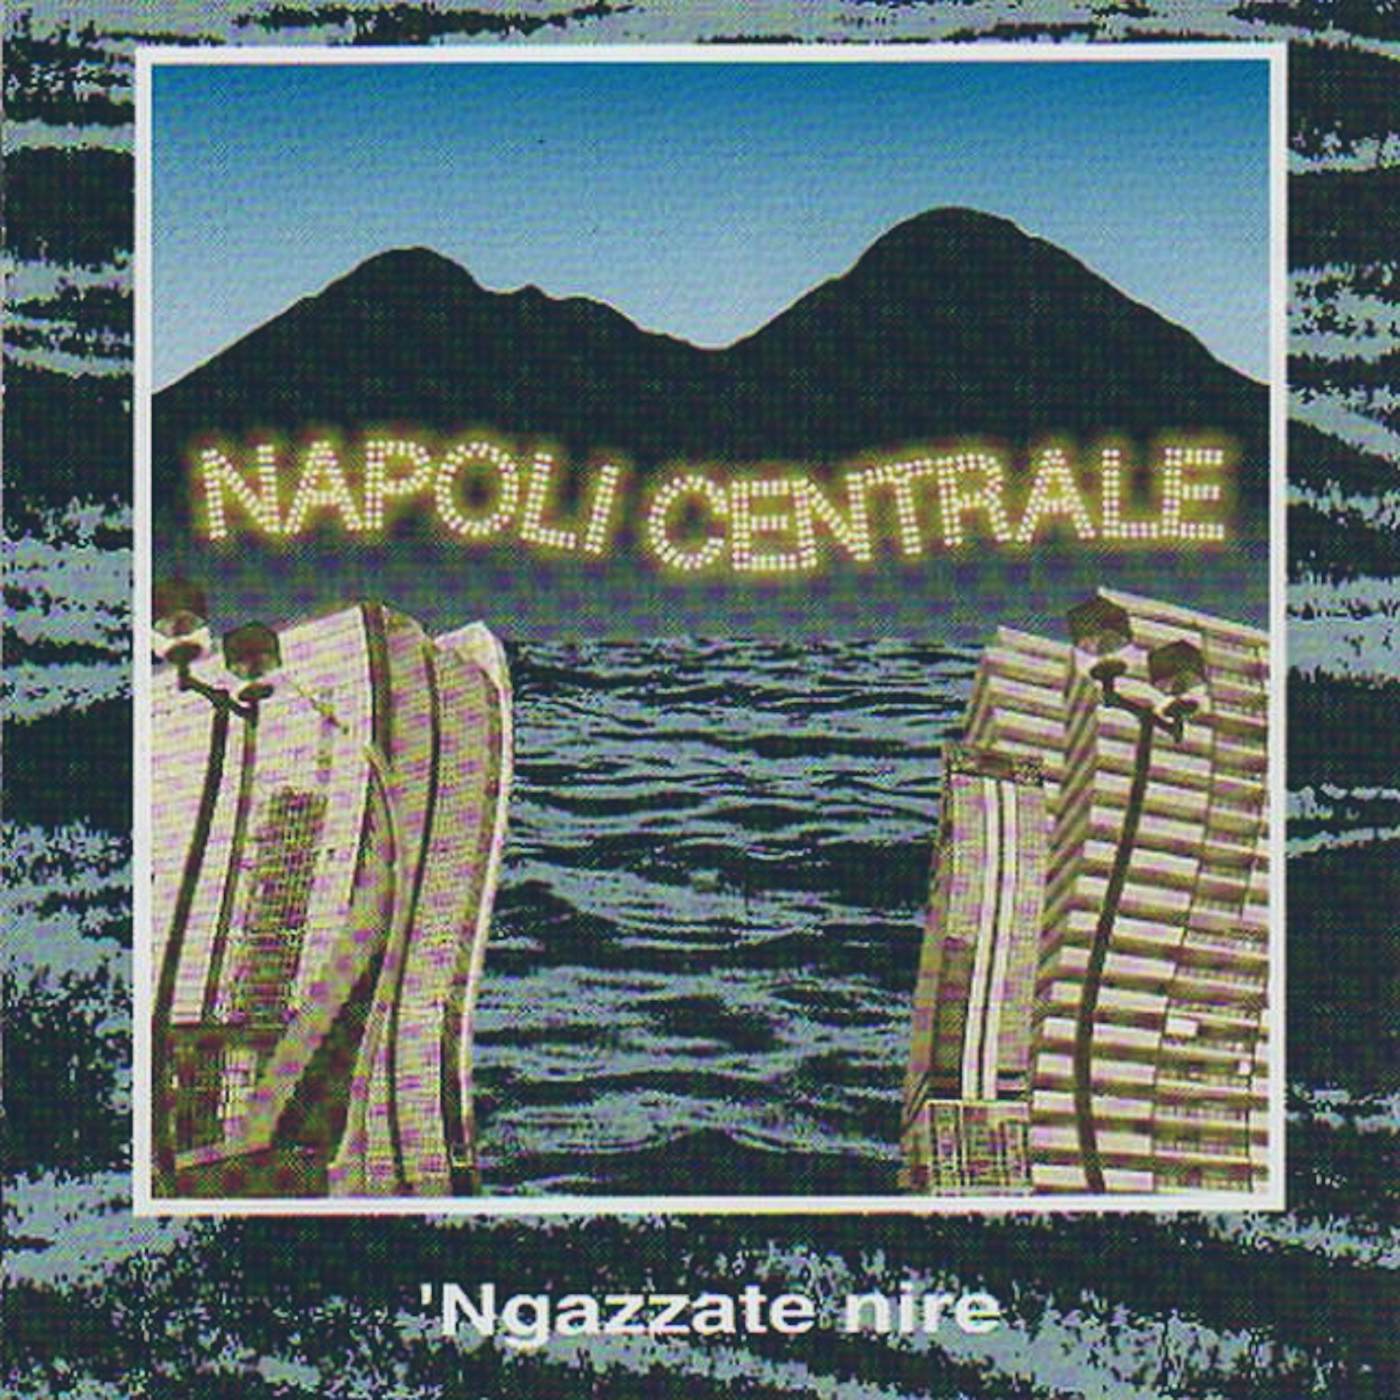 Napoli Centrale